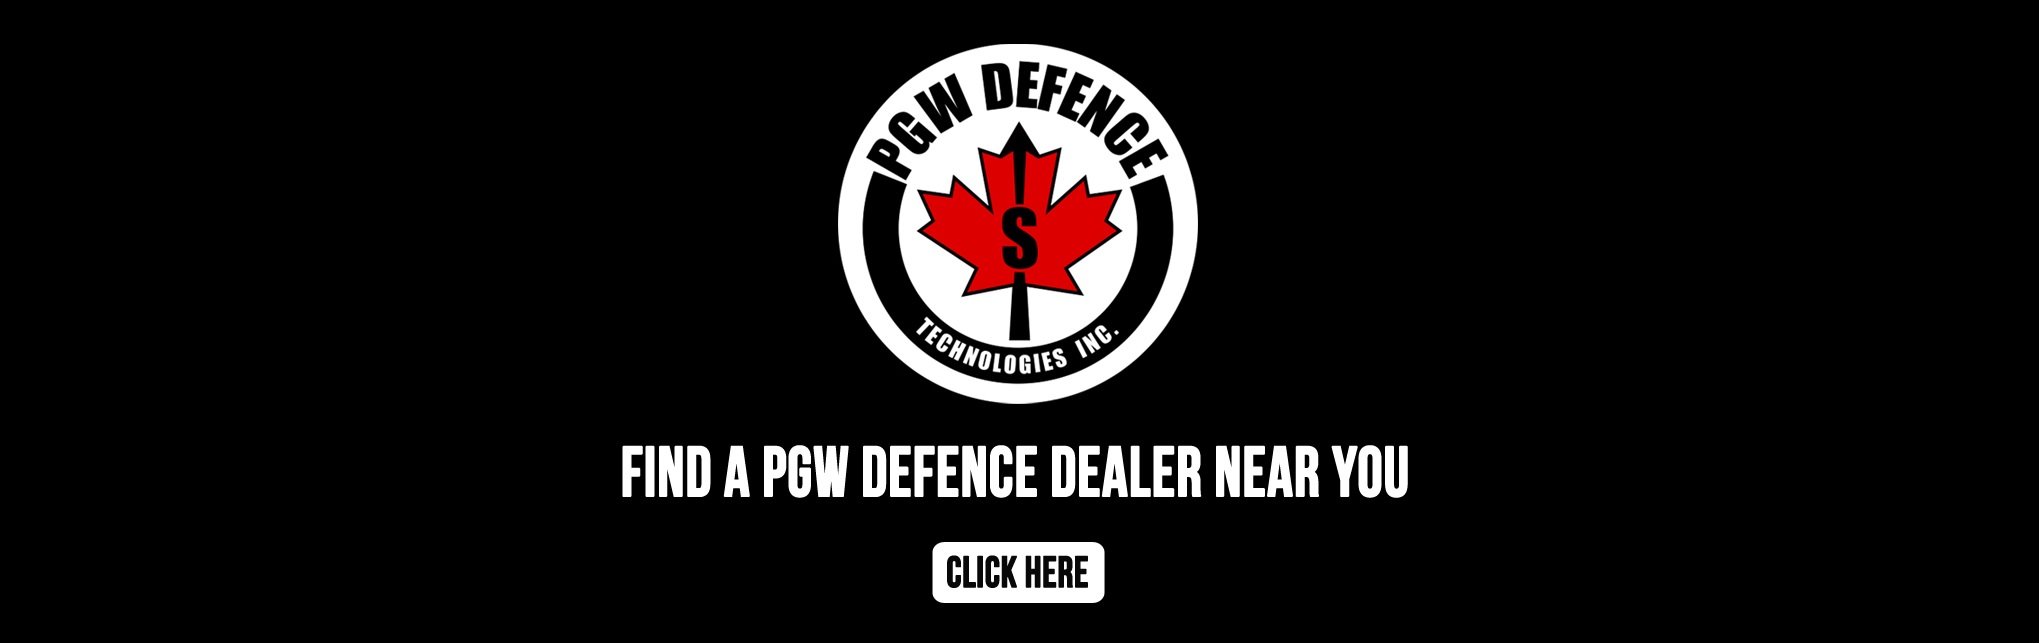 PGW-DEFENCE-DEALER